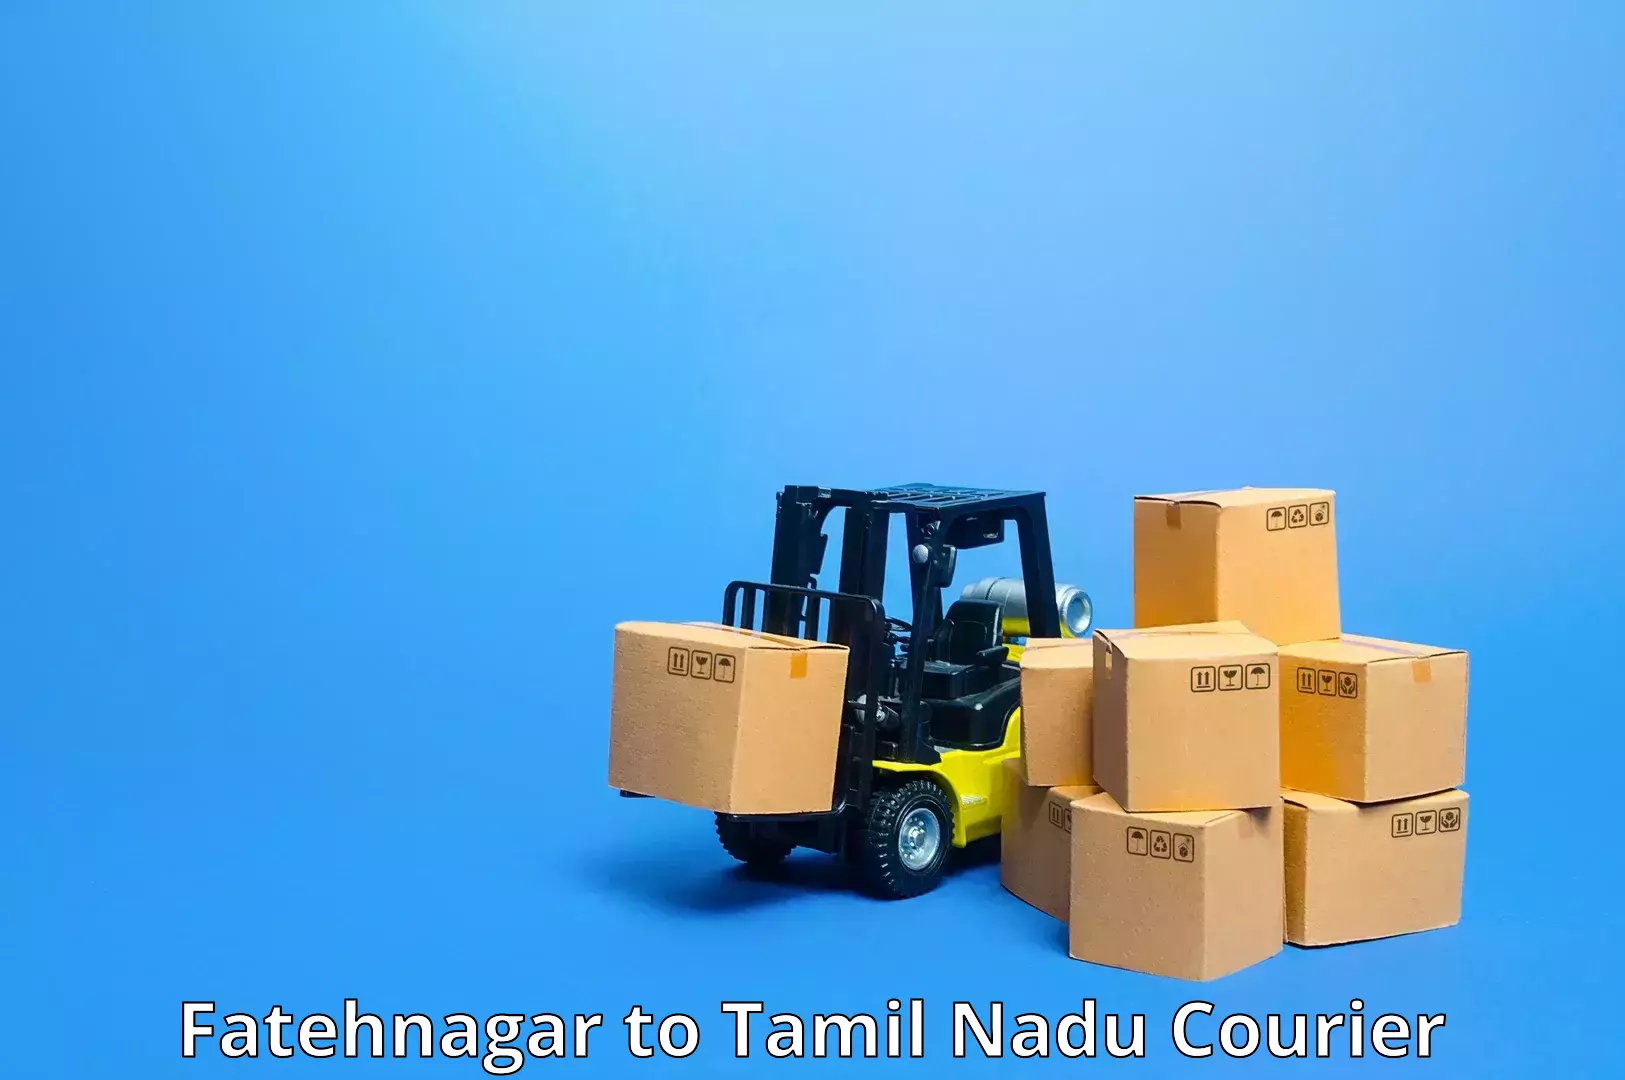 Efficient freight service Fatehnagar to Tamil Nadu